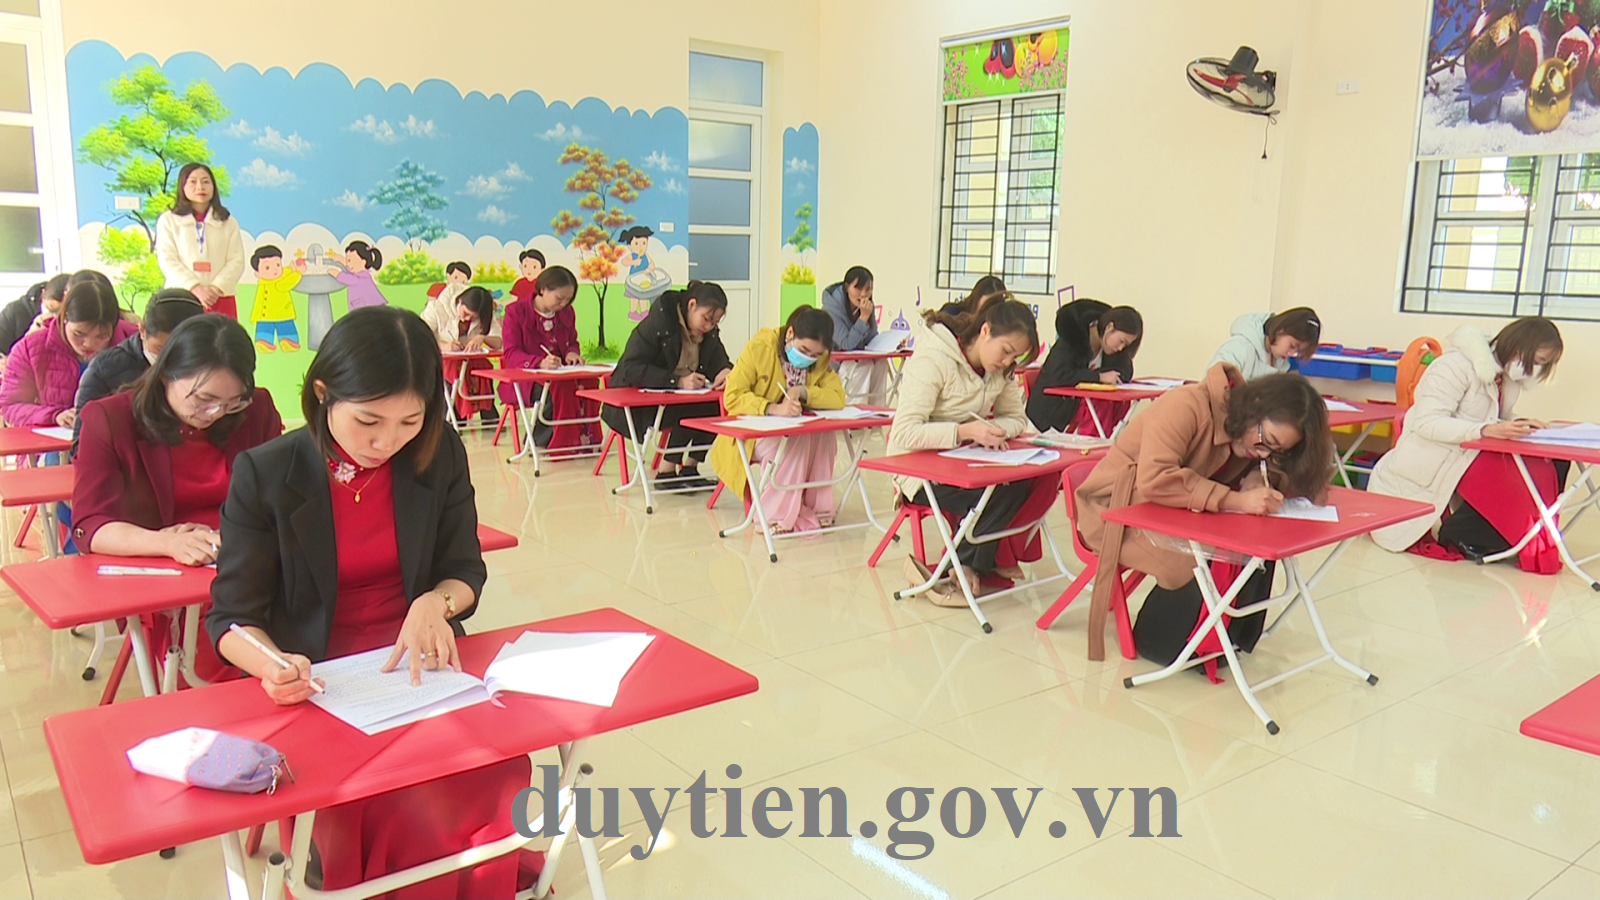 duytien.gov.vn | Phòng Giáo dục và Đào tạo thị xã Duy Tiên khai ...